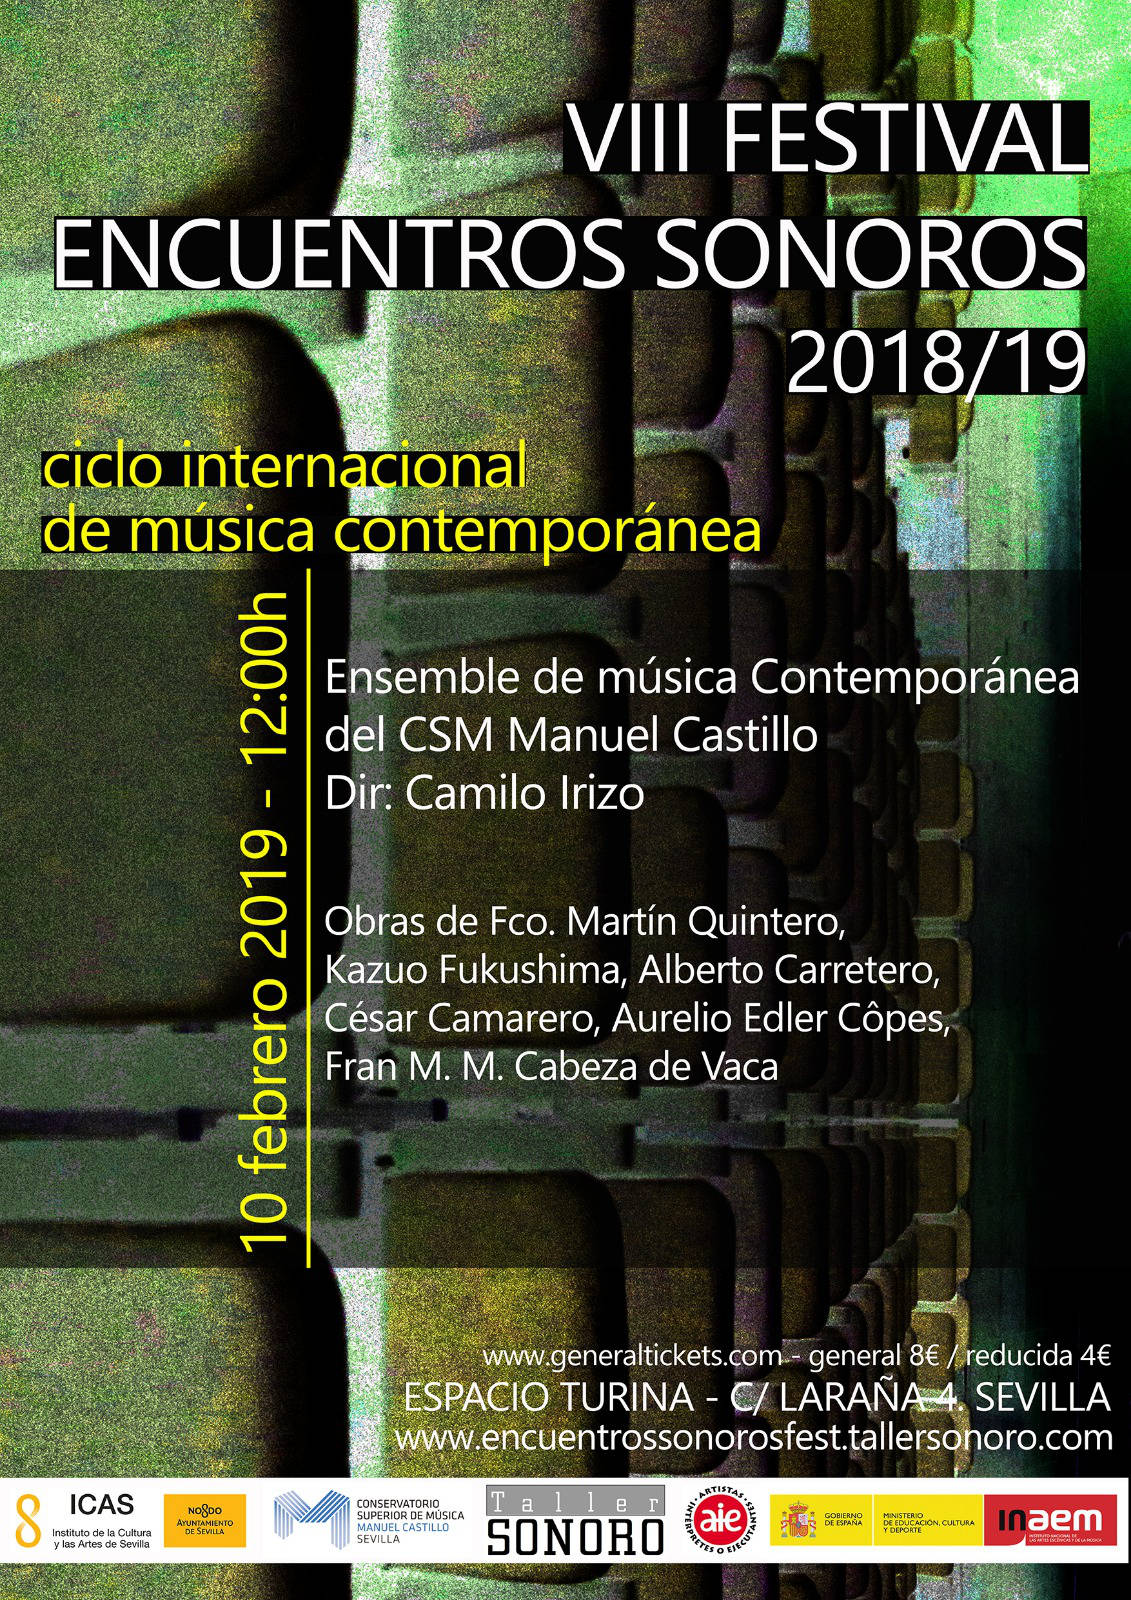 Ensemble de Música Contemporánea en el VIII Festival Encuentros Sonoros